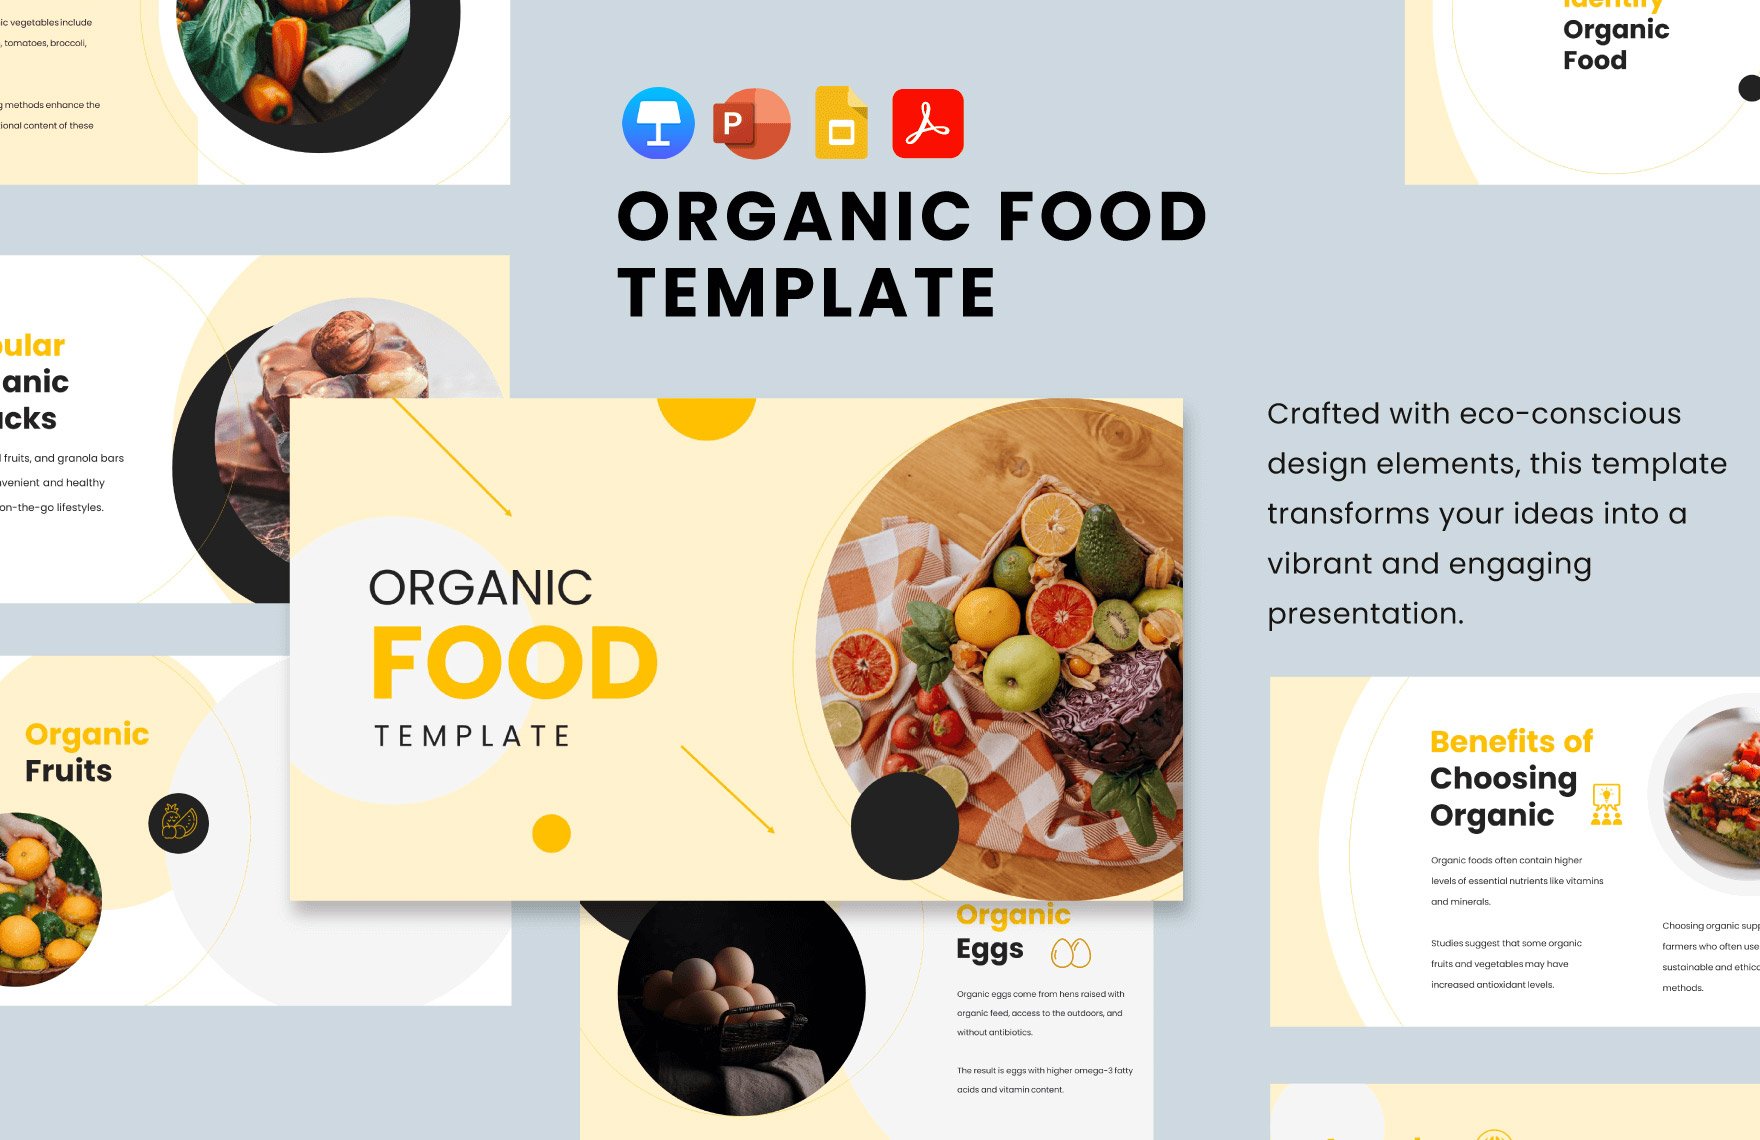 Organic Food Template in PDF, PowerPoint, Google Slides, Apple Keynote